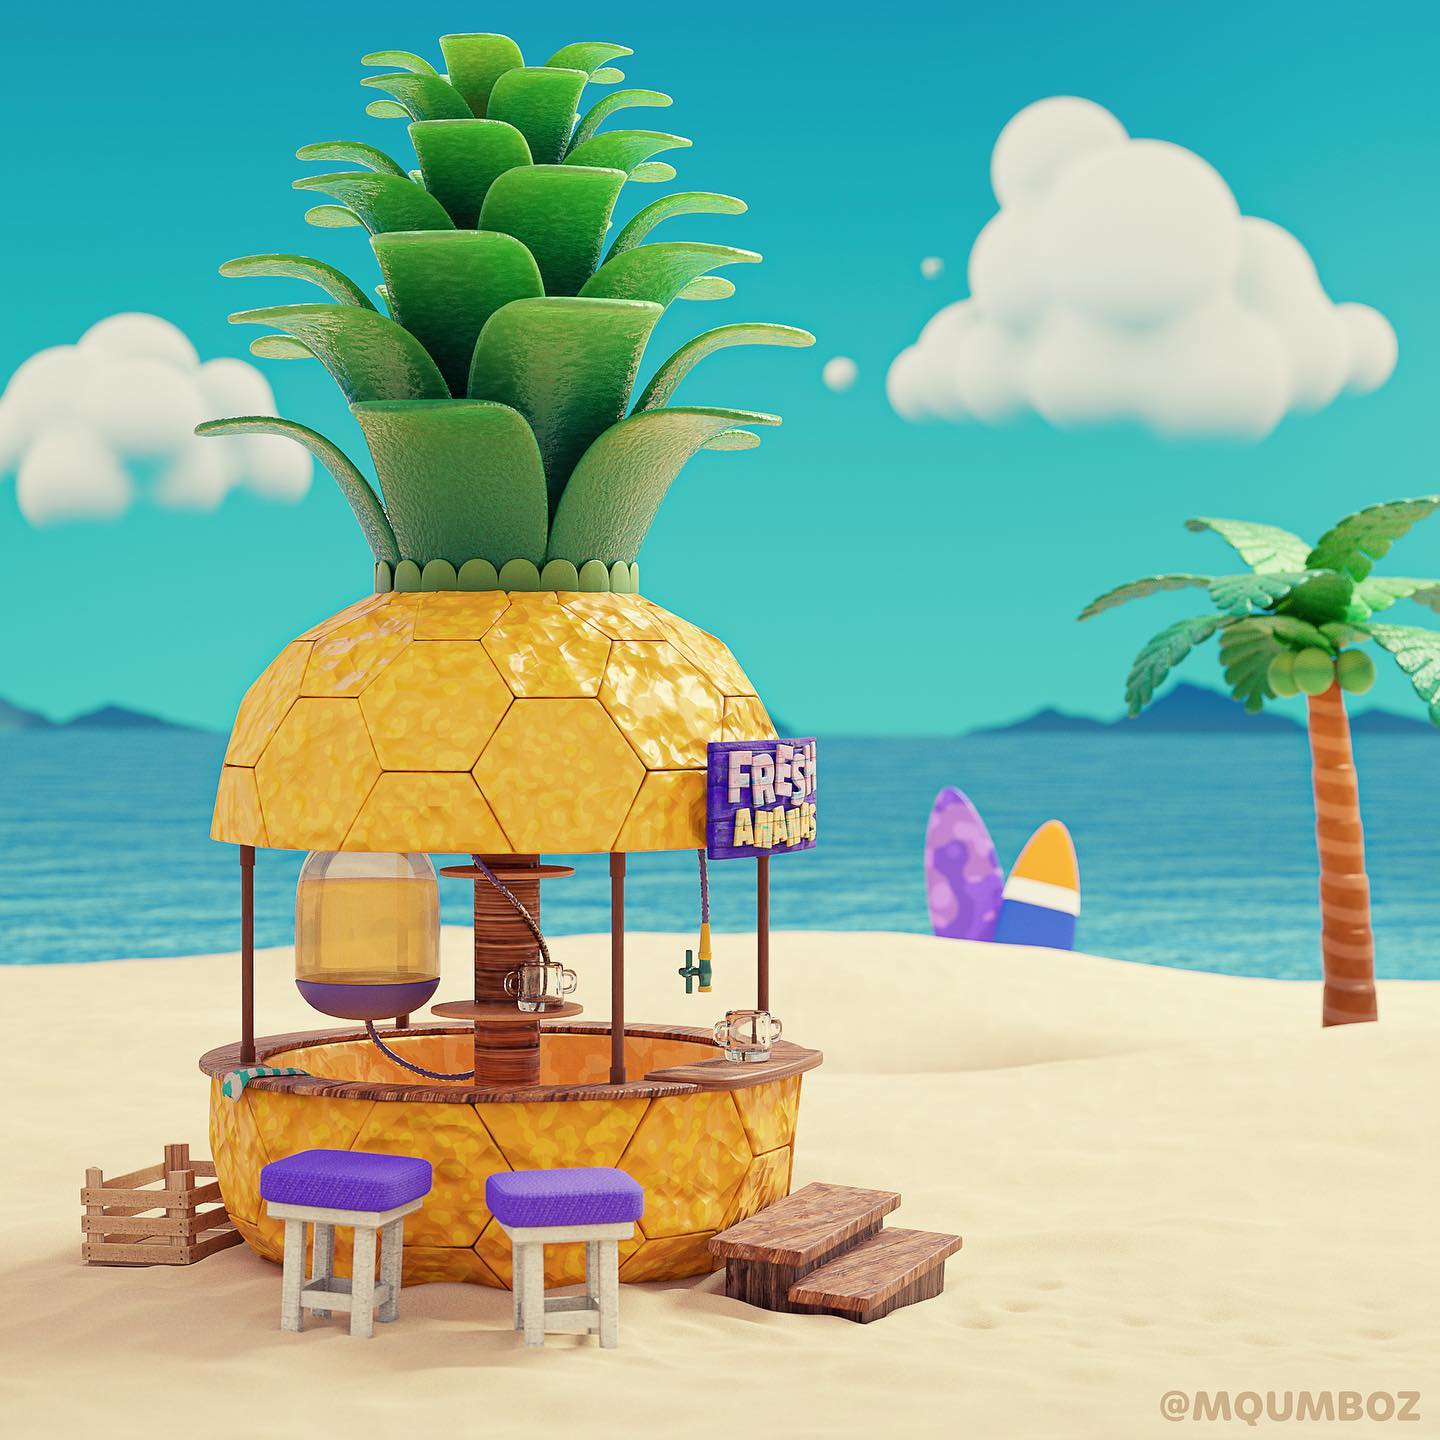 3D Design of a Pineapple themed juice bar on a tropical beach